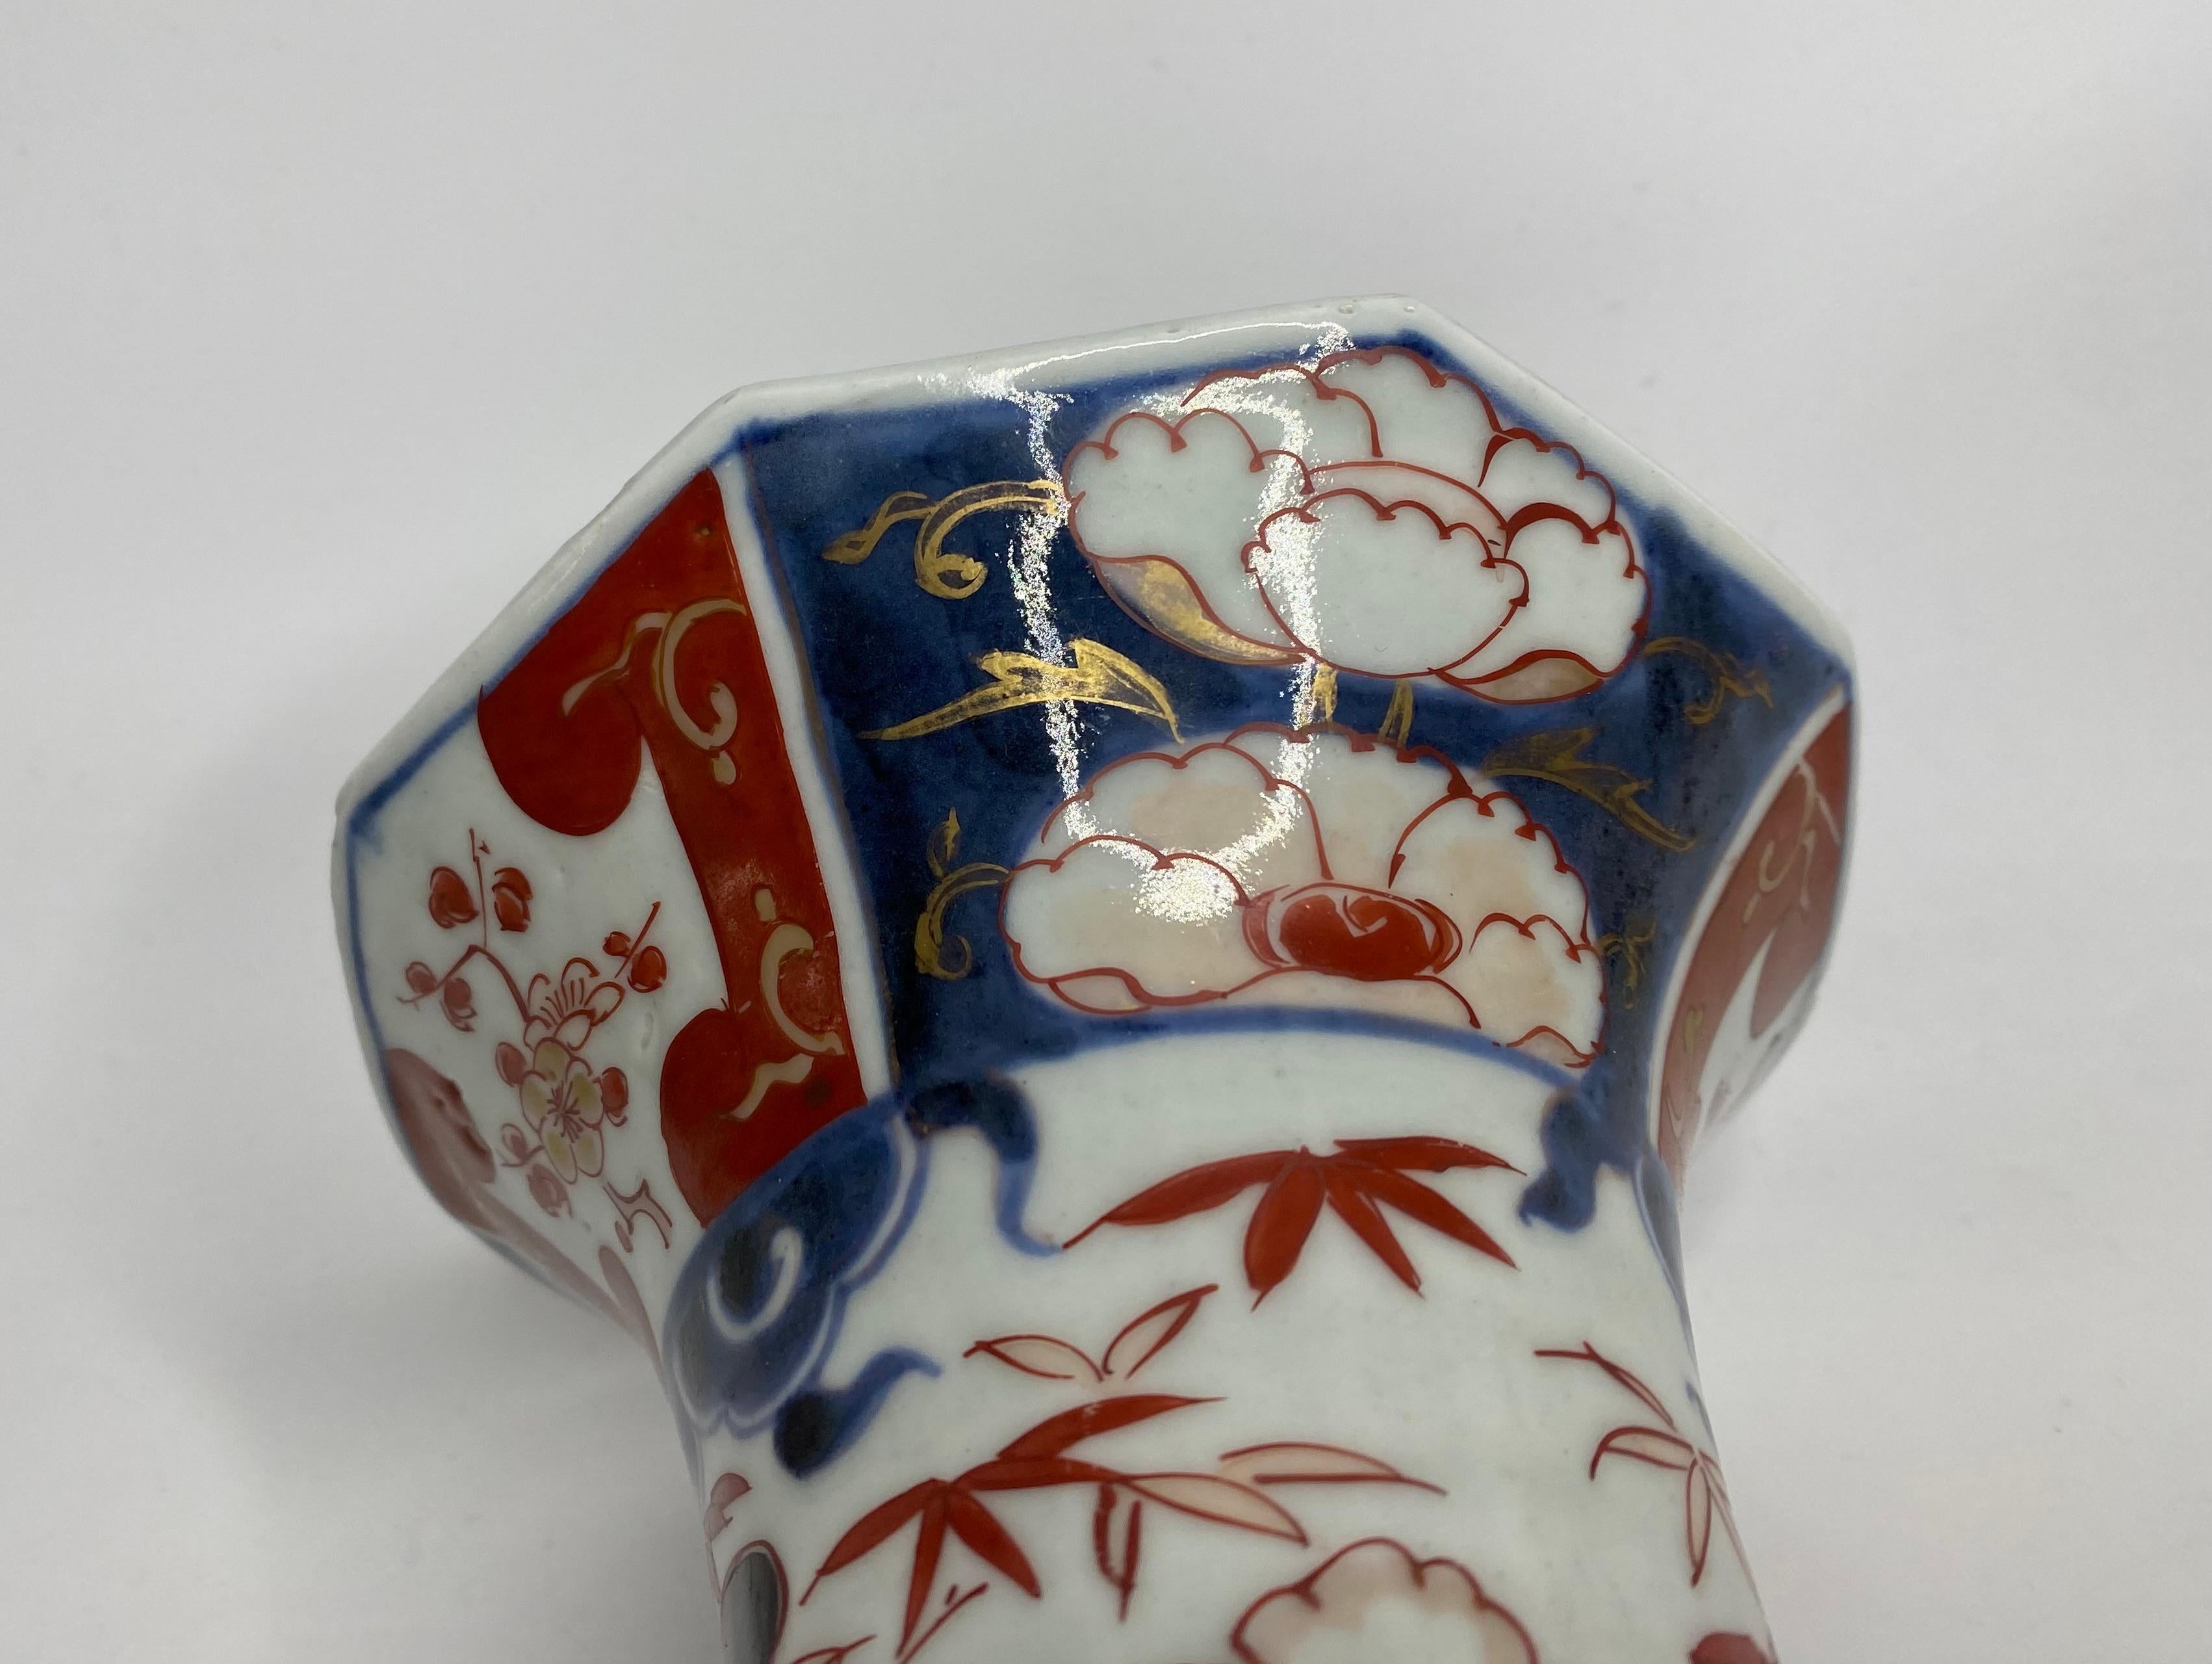 Pair Imari porcelain vases, Arita, Japan, c. 1700. Genryoku Period. 5